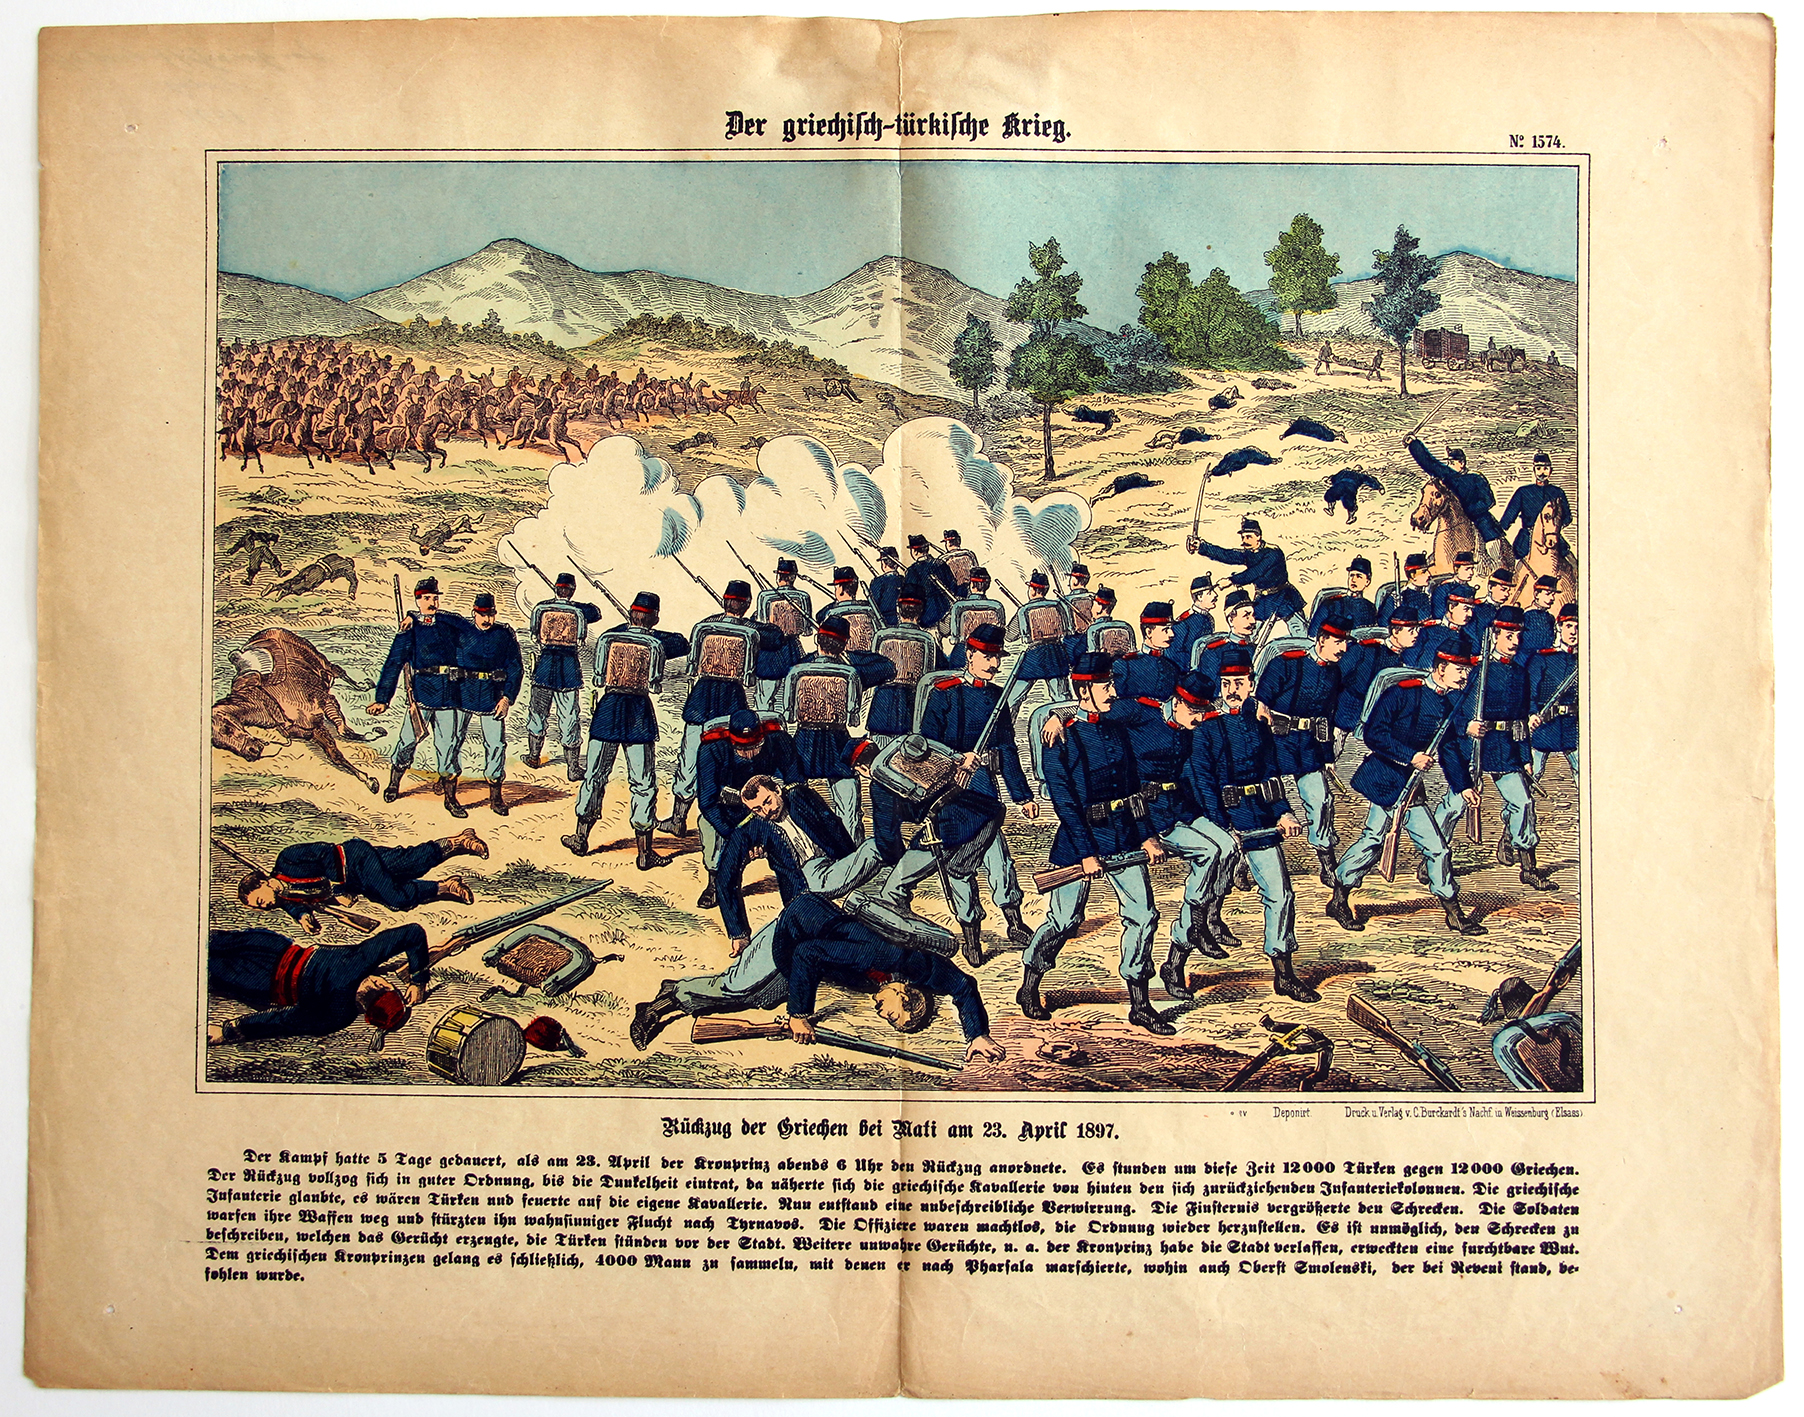 2 Planches imagerie Wissembourg - C.Burckardt - Guerre de Greco-Turque - 1897 - Empire ottoman - Grèce -